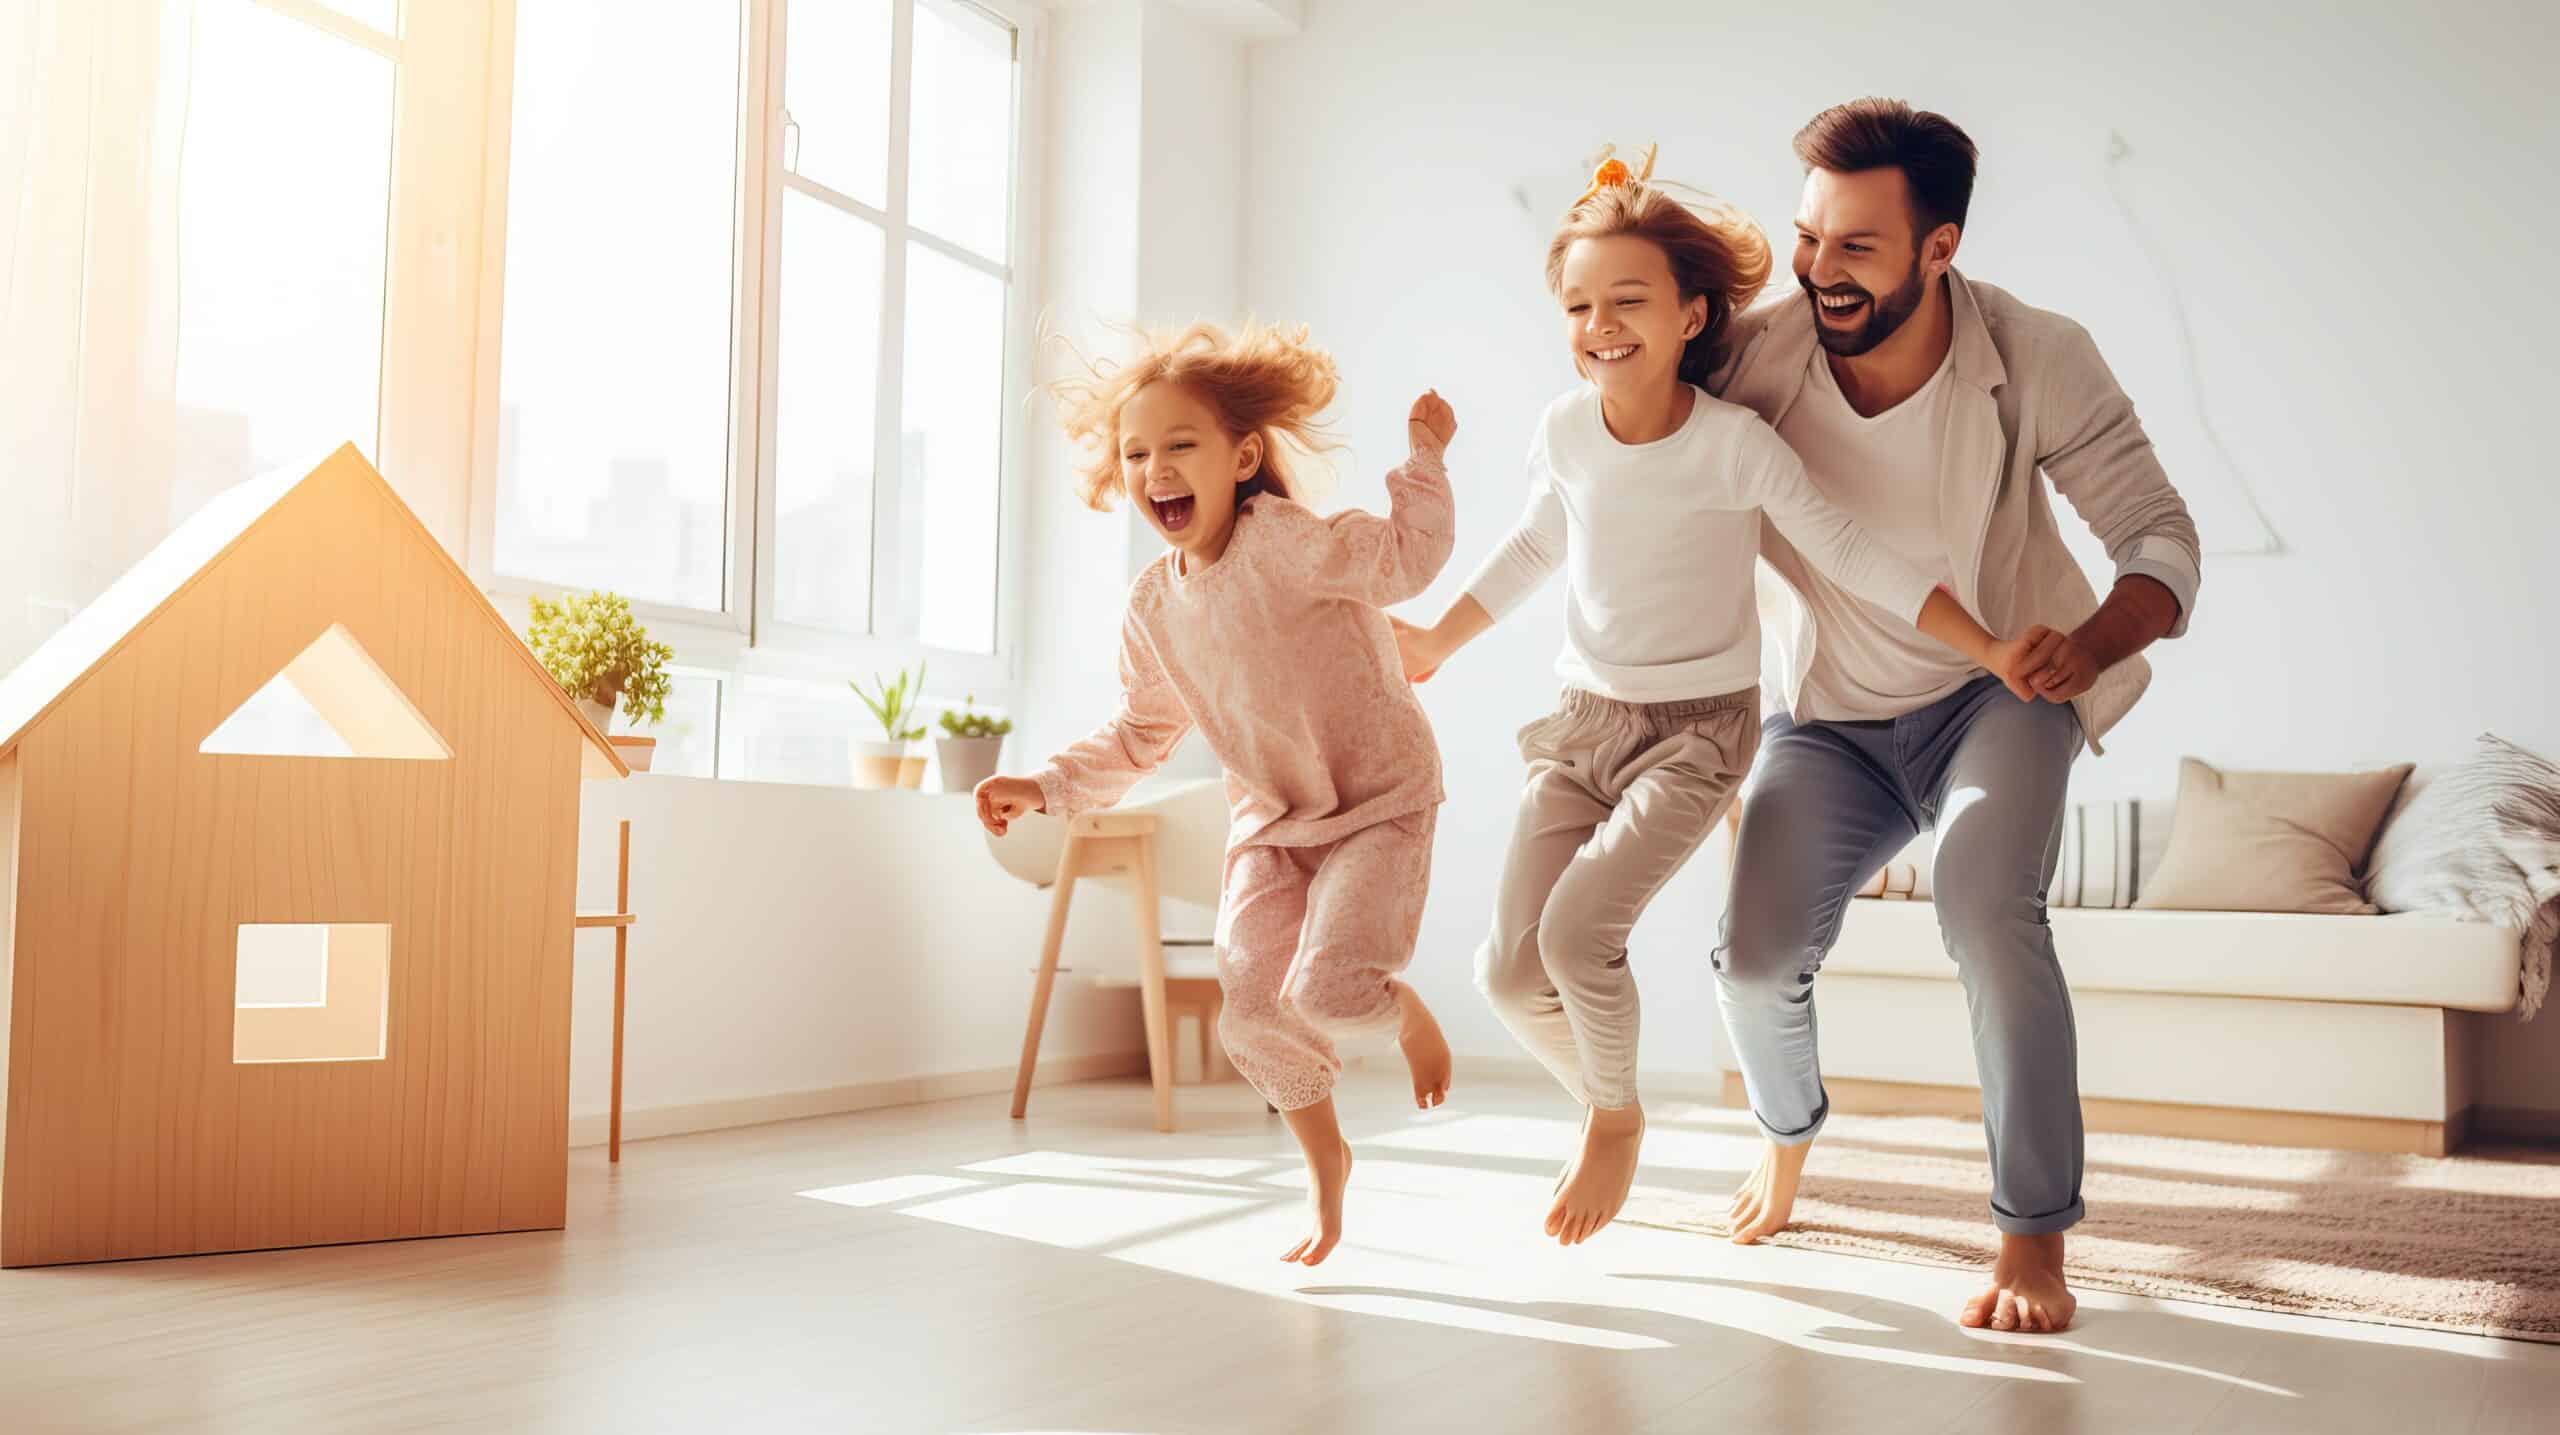 Försäkringsrelateradetjänster skapar mervärde. Happy family with their children, insurance concept